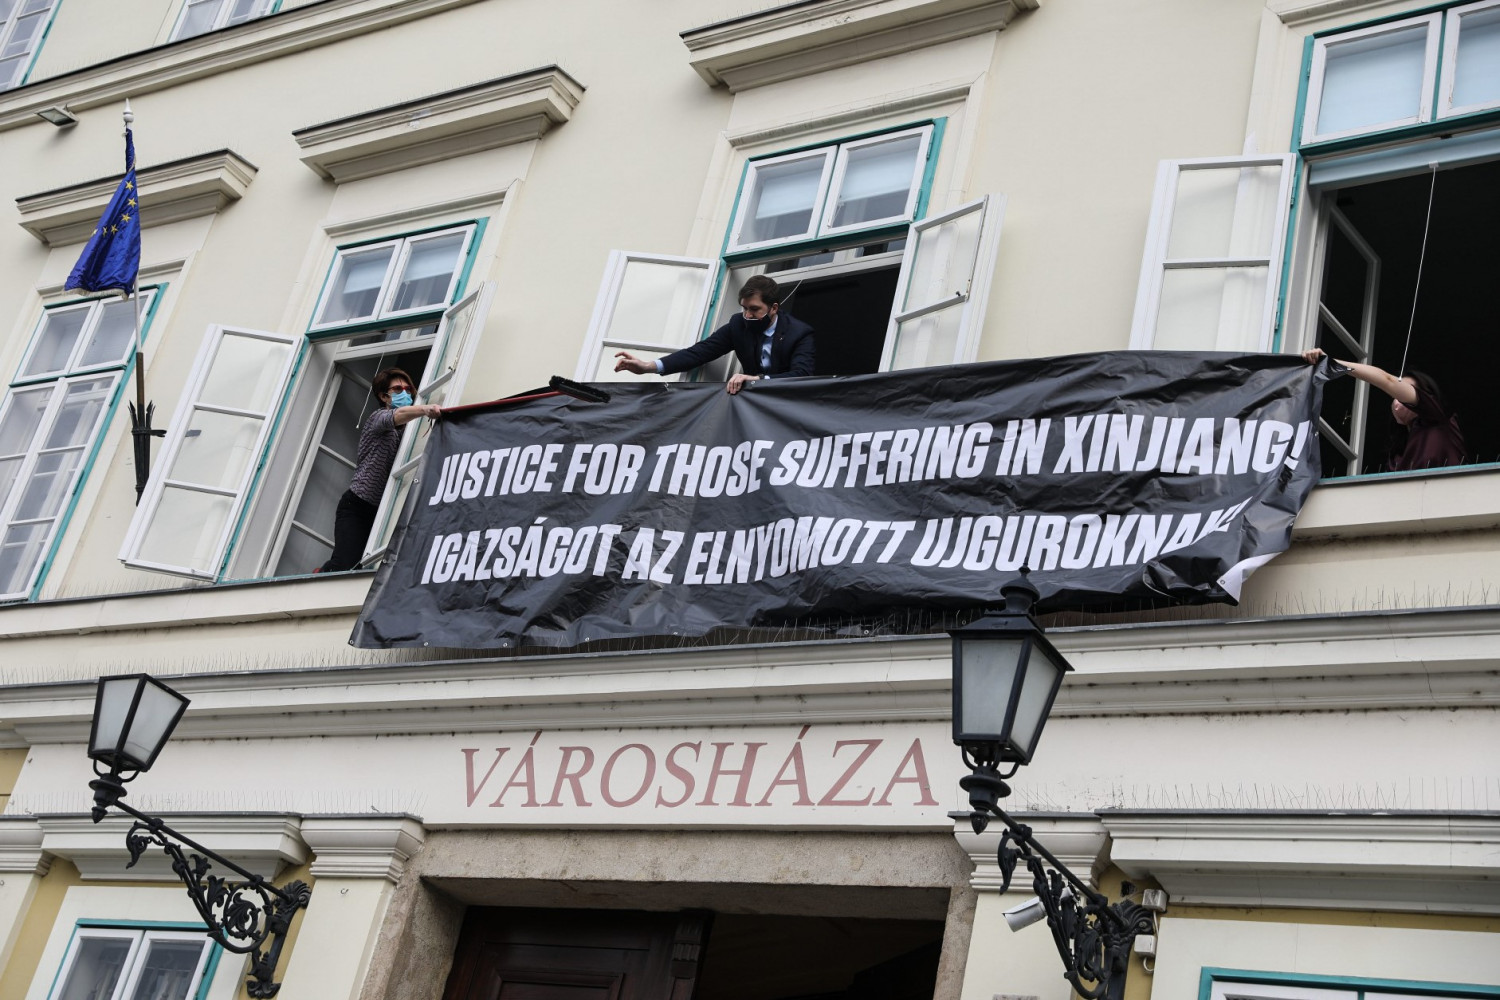 Chính quyền Quận 1, Budapest giăng biểu ngữ phản đối những vi phạm nhân quyền của Trung Quốc với người Duy Ngô Nhĩ tại Tân Cương - Ảnh: Facebook của Chính quyền Quận 1, Budapest